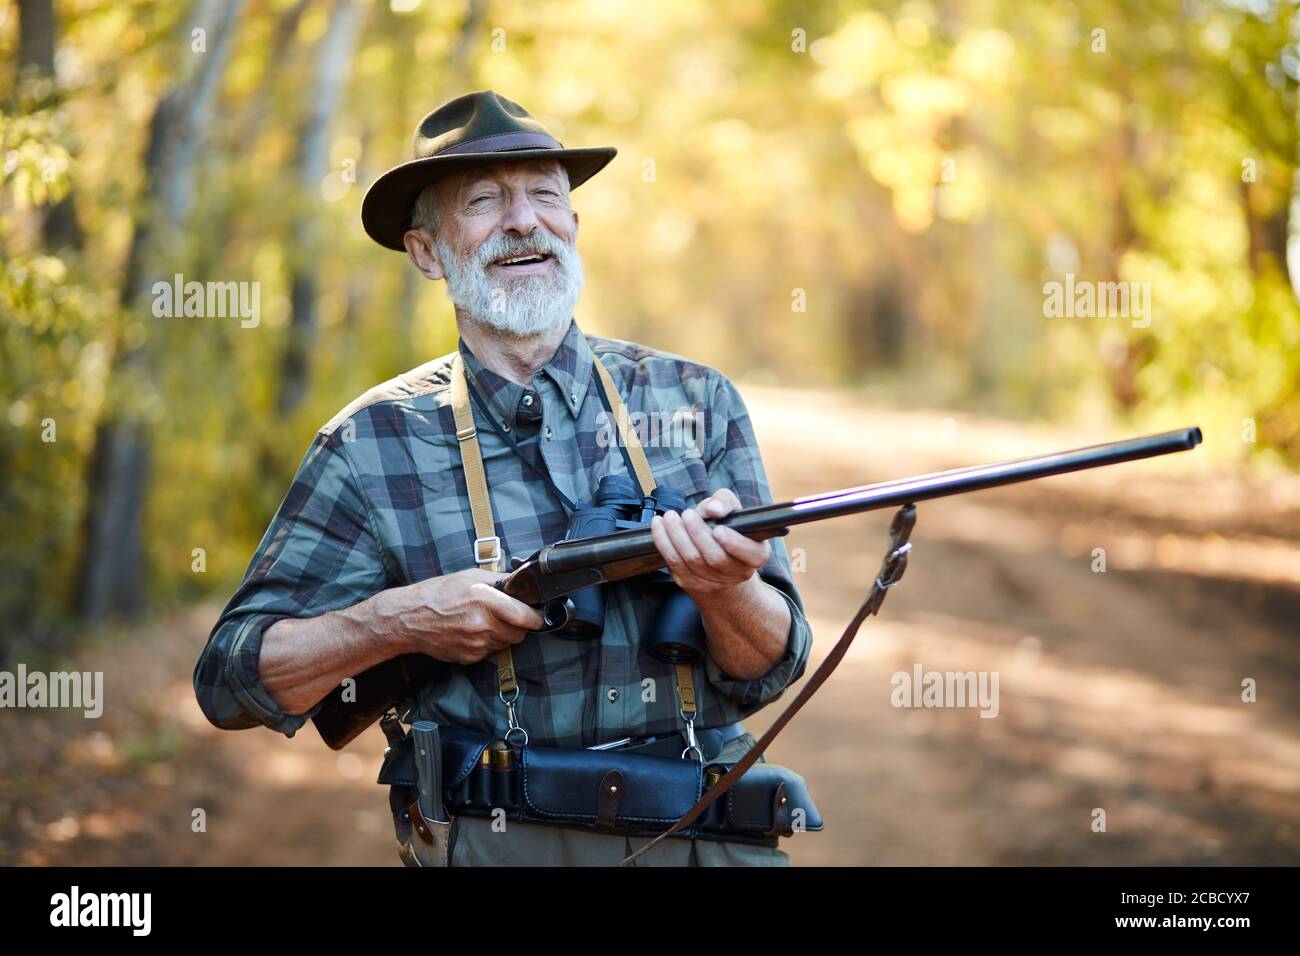 Homme gai avec le fusil de retenue avec les deux bras, rire. Saison de chasse ouverte, en forêt Banque D'Images